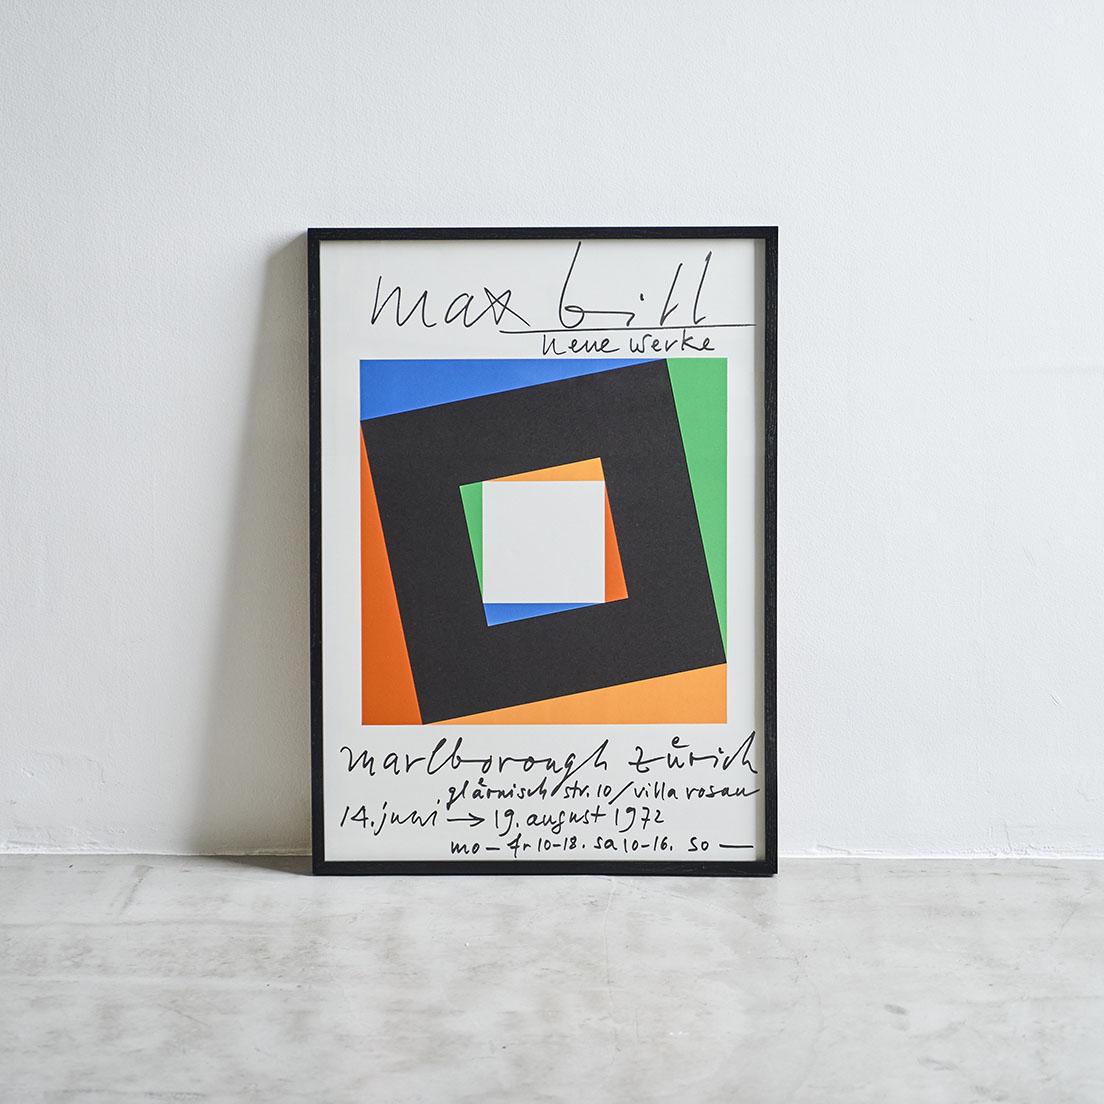 1972年、スイス〈Marlborough Galerie〉で開催された、マックス・ビルのエキシビションポスター。